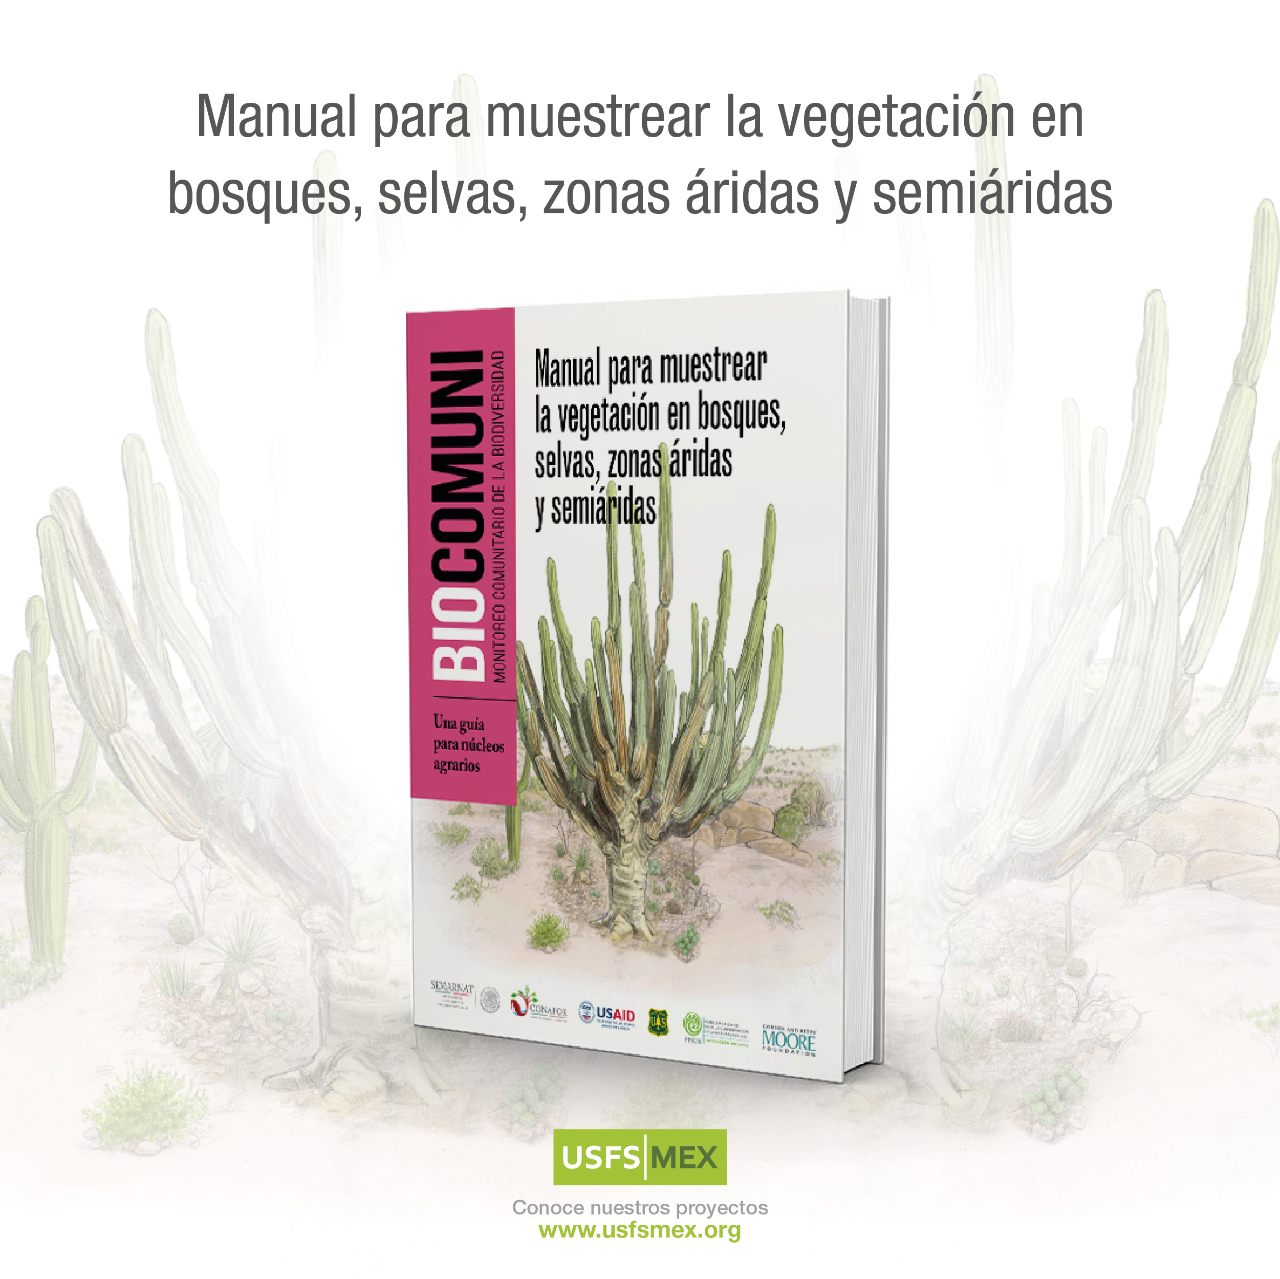 Manual para muestrear la vegetación en bosques, selvas, zonas áridas y semiáridas (USFS)